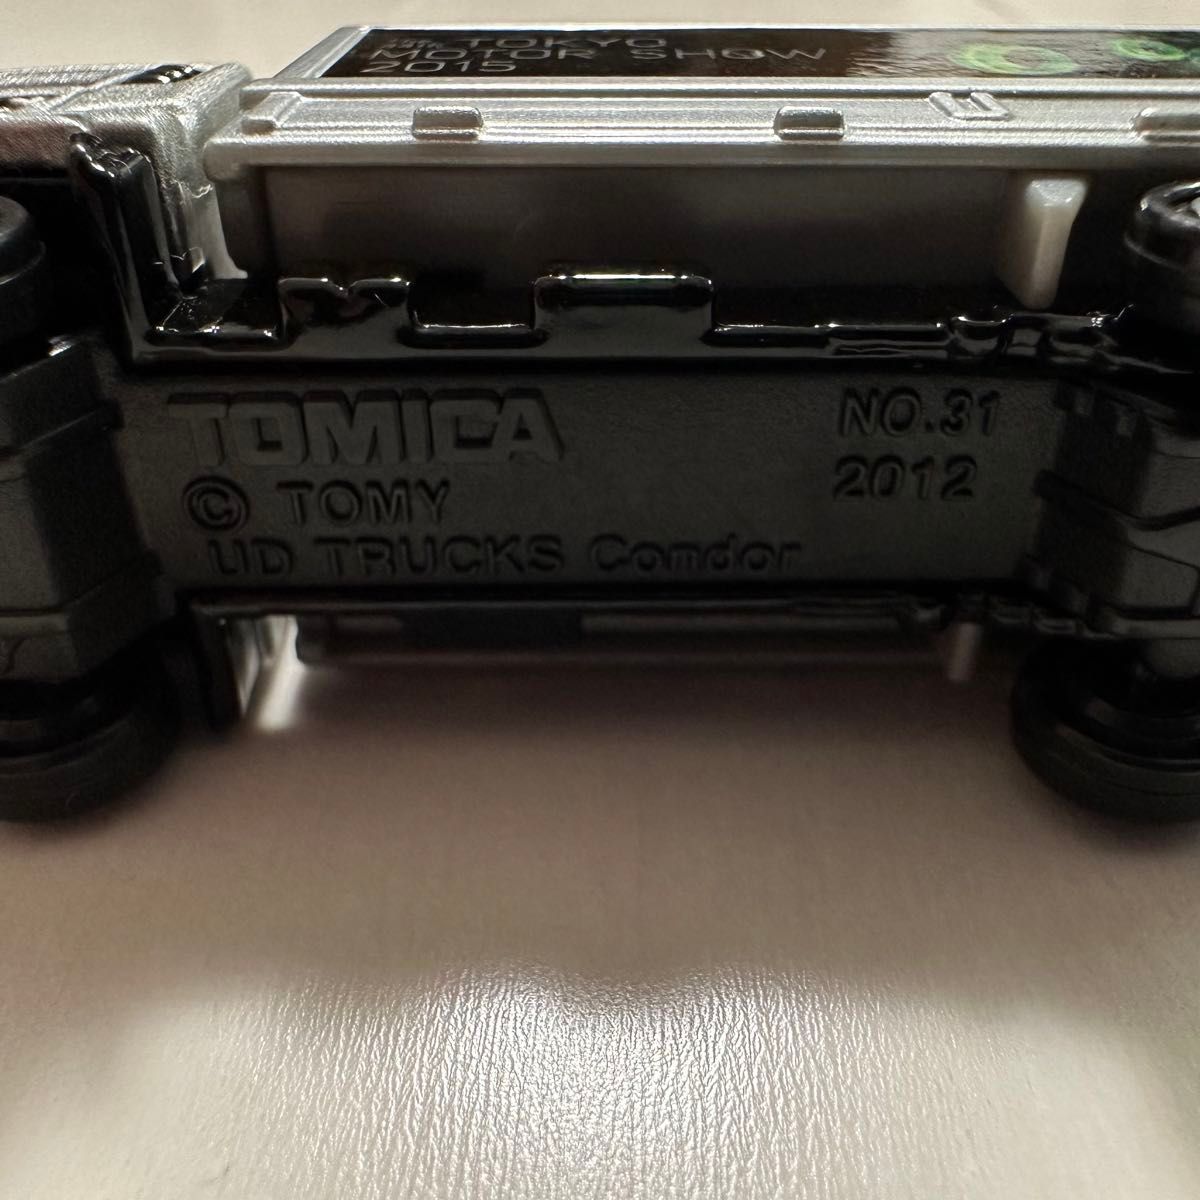 トミカ UD コンドル 2015 TOKYO MOTOR SHOW